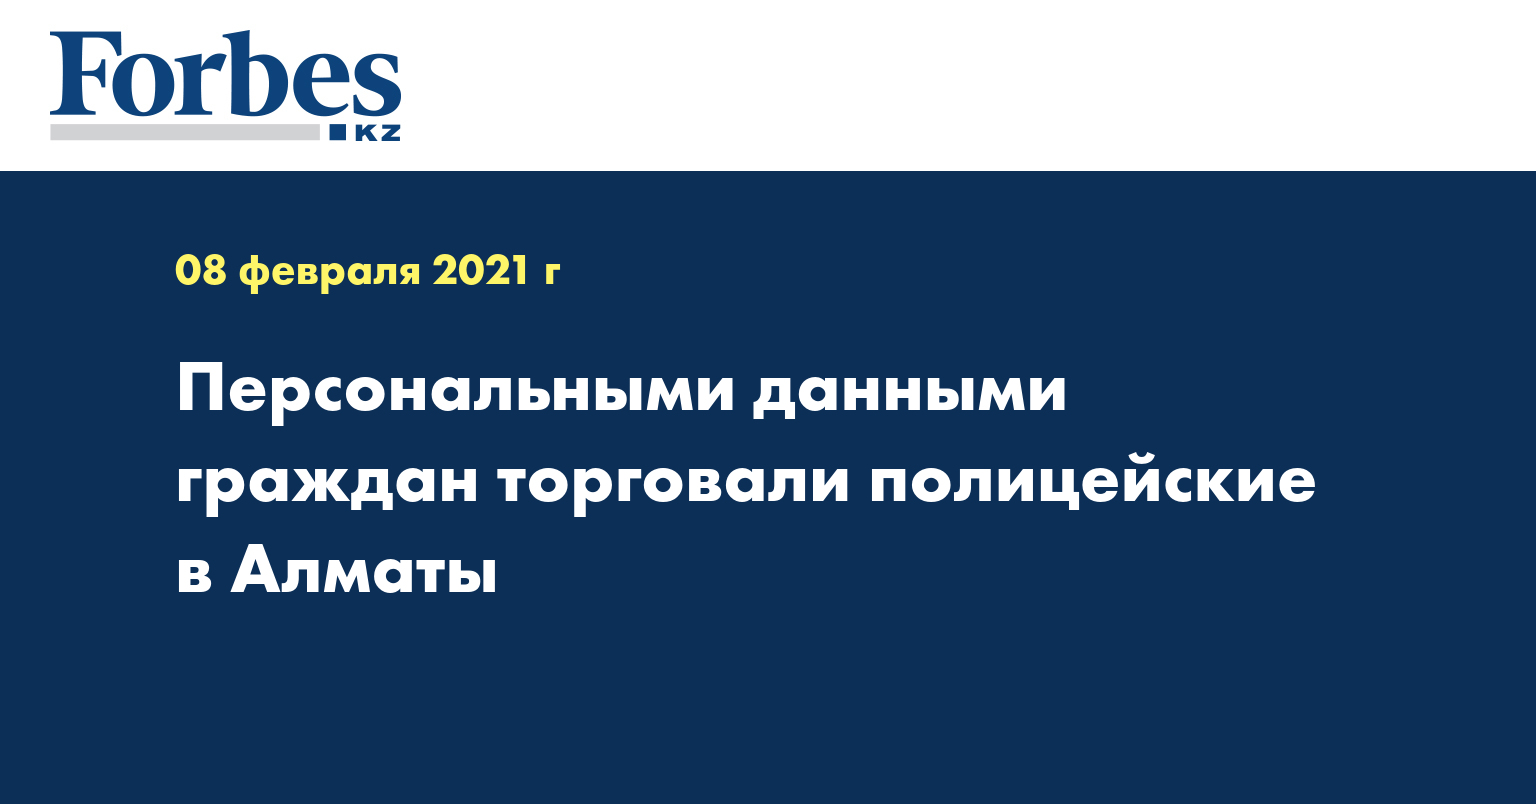 Персональными данными граждан торговали полицейские в Алматы